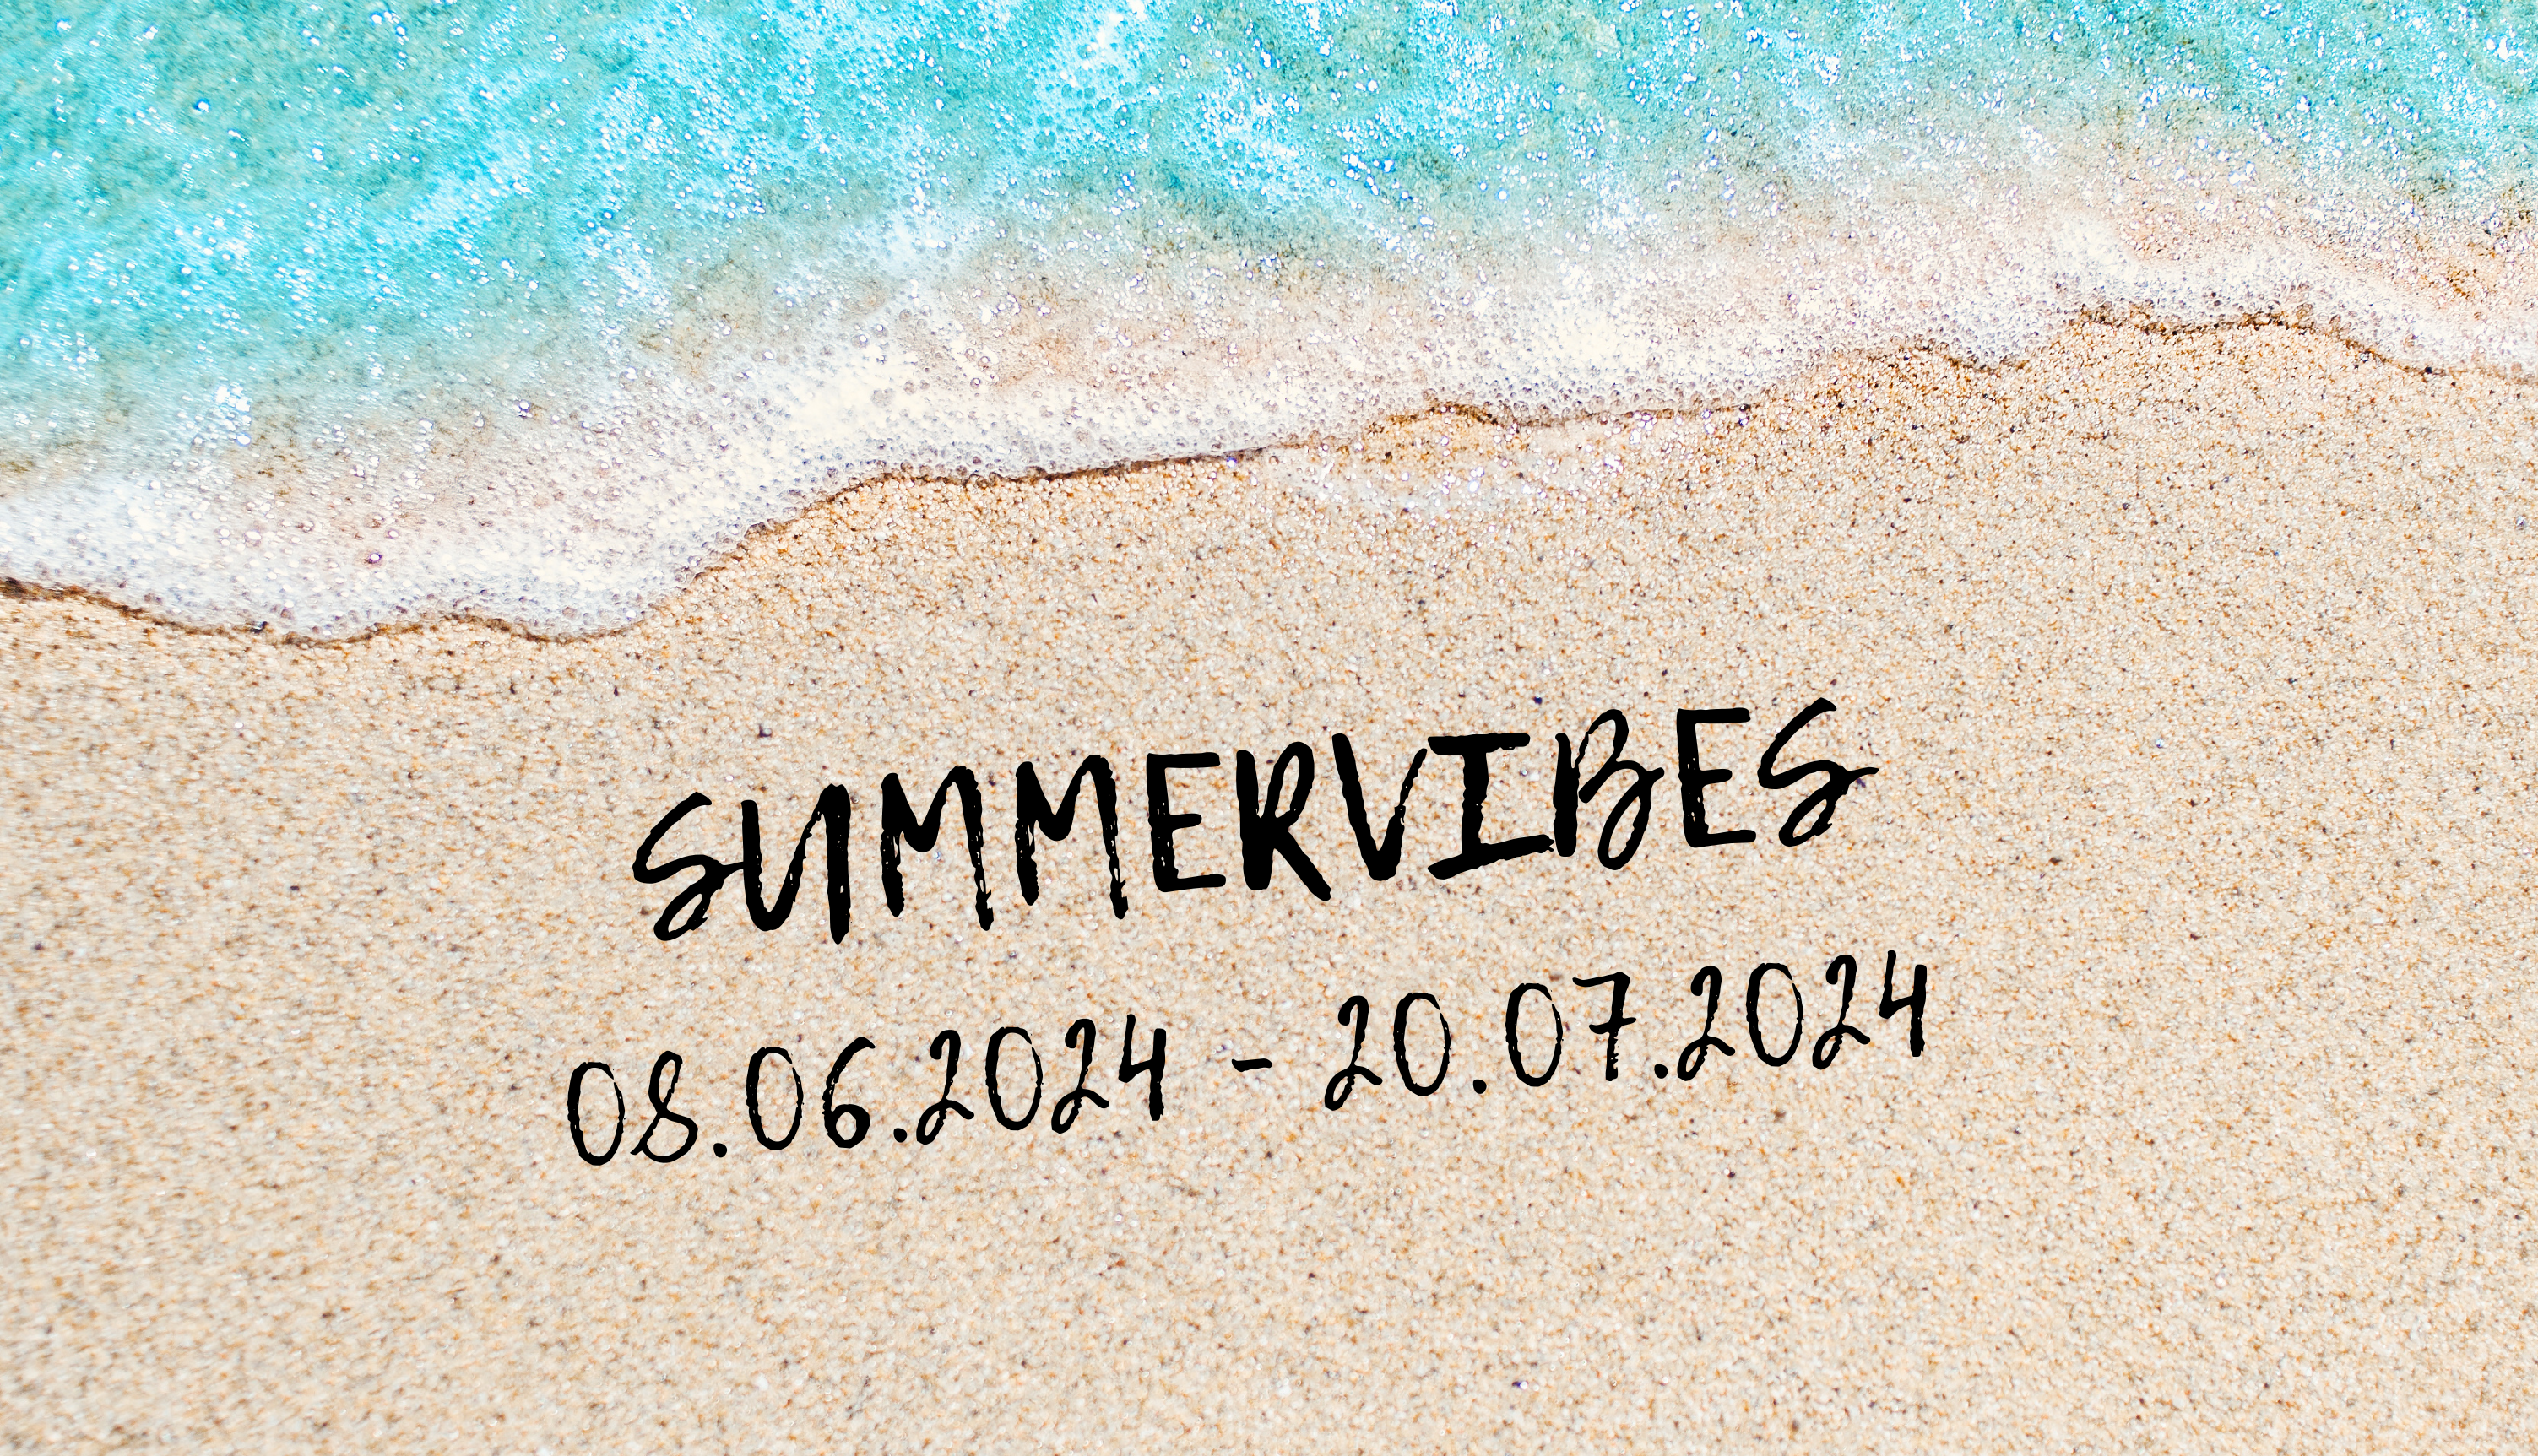 summervibes-edition2-galerie-dumas-linz